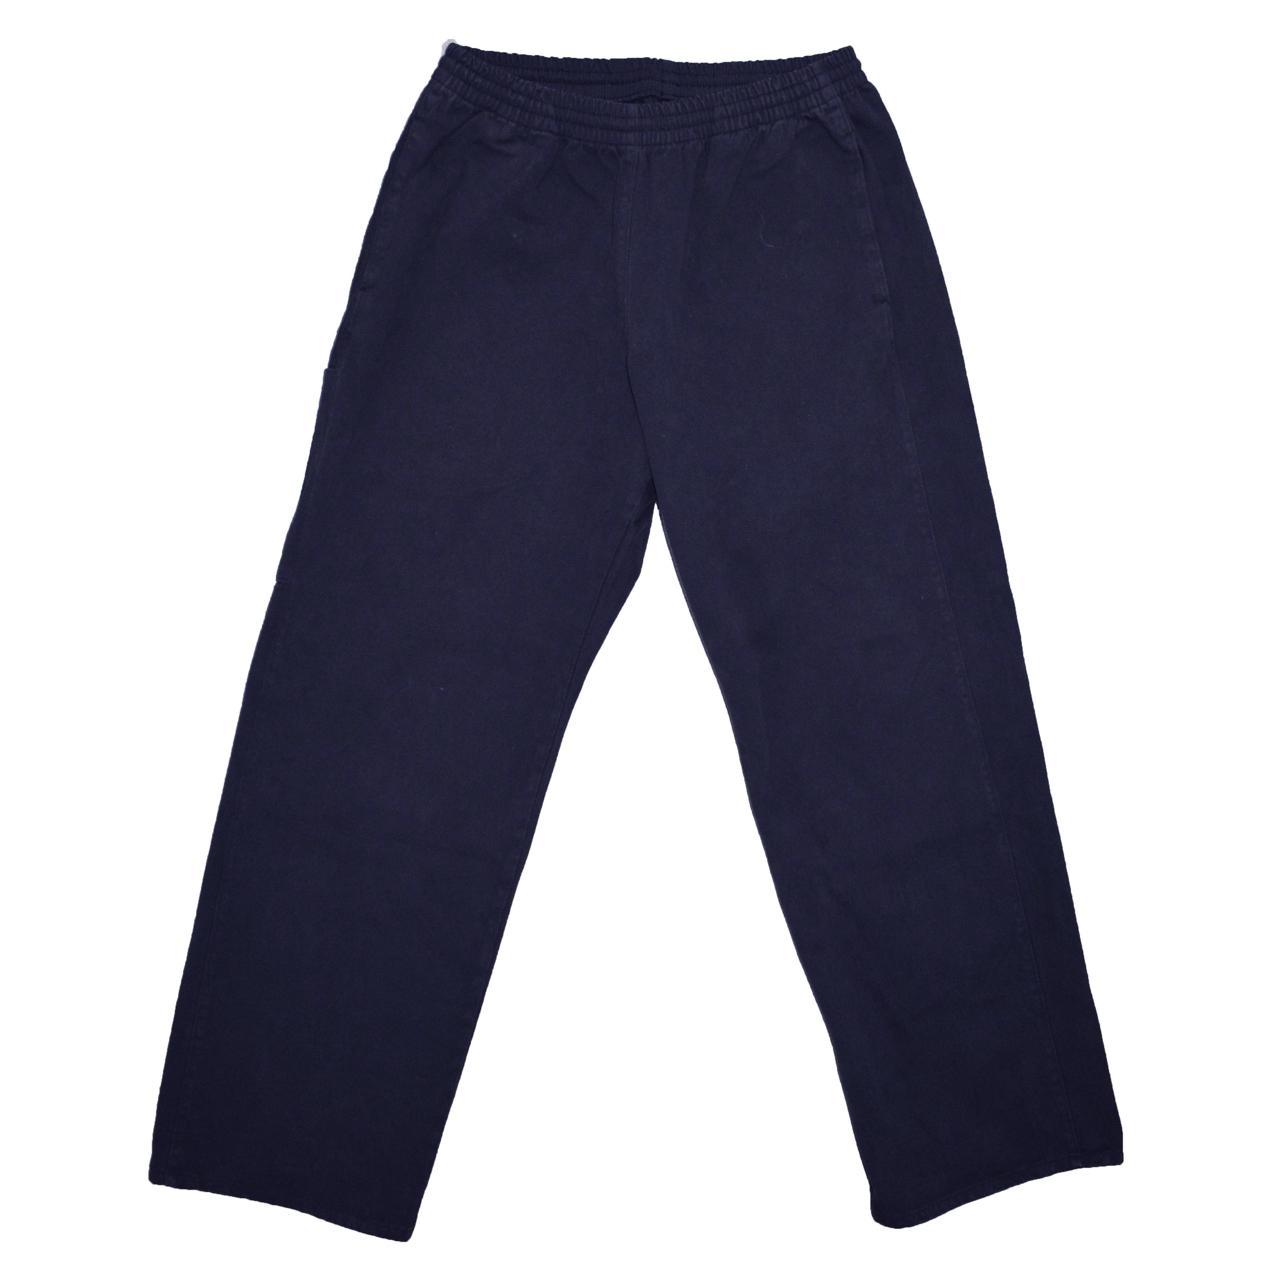 Yeezy Gap Blue Cargo Pants Sateen Pocket Trousers...